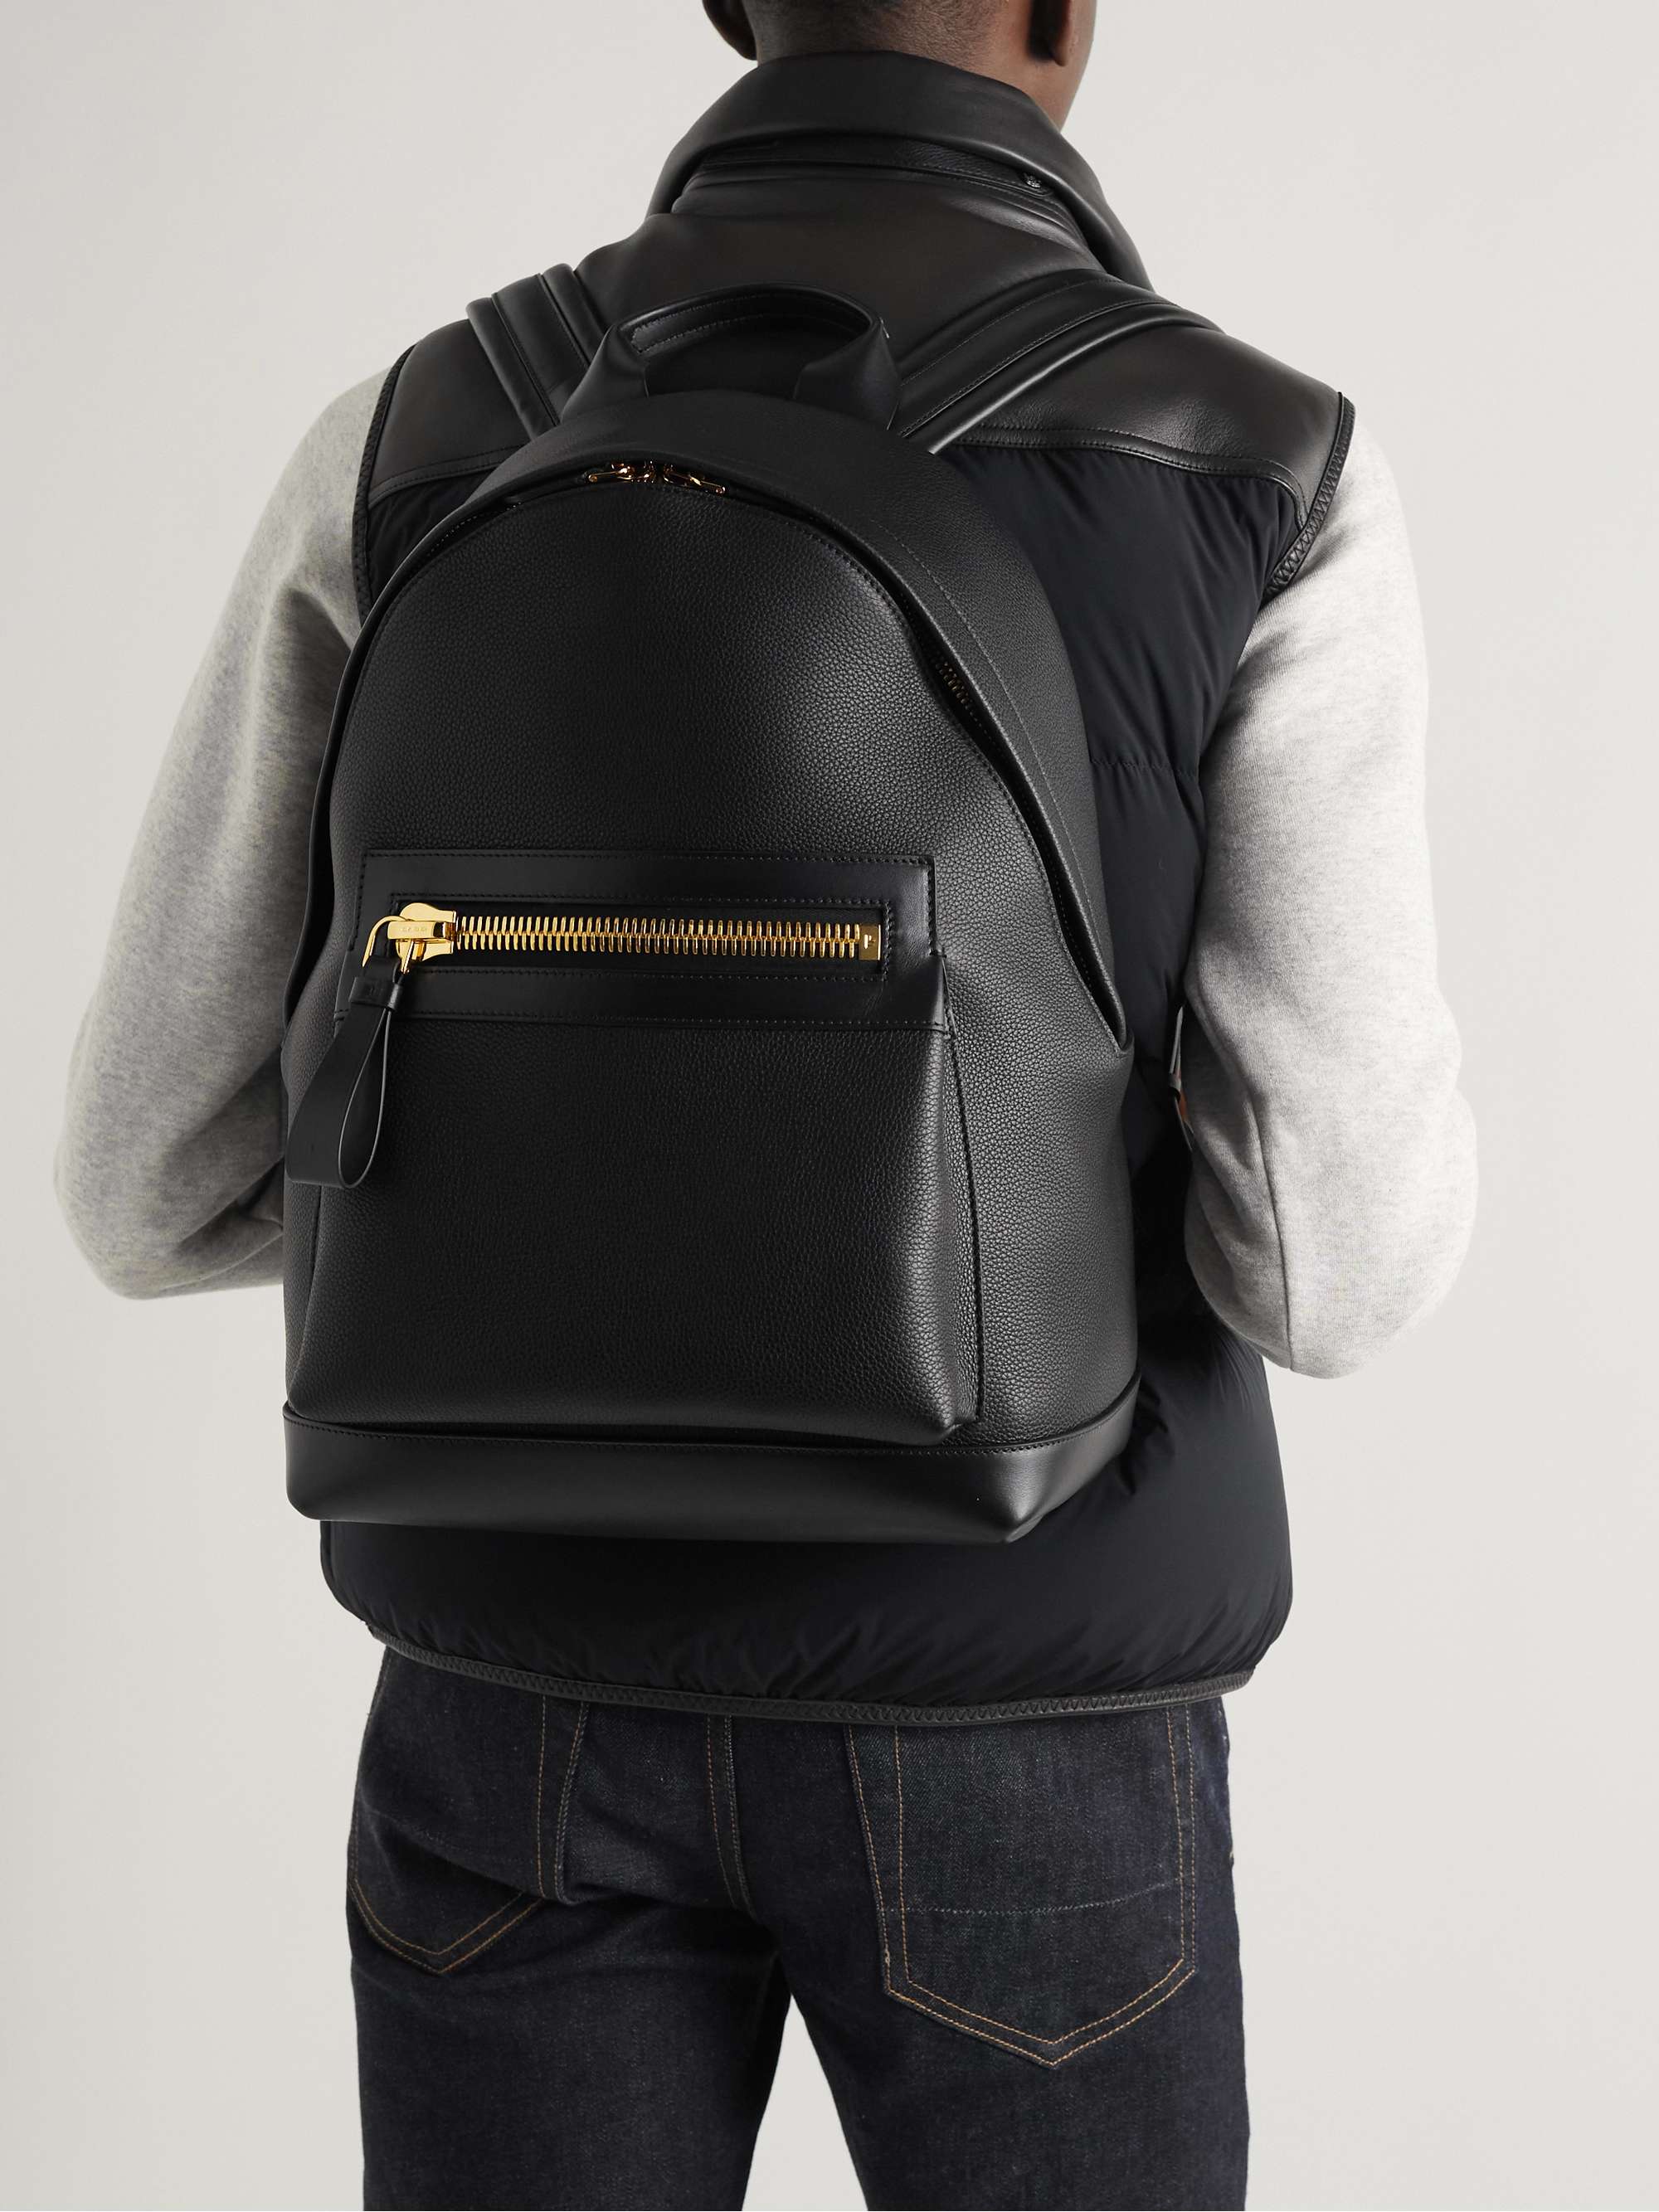 TOM FORD Buckley Pebble-Grain Leather Backpack for Men | MR PORTER